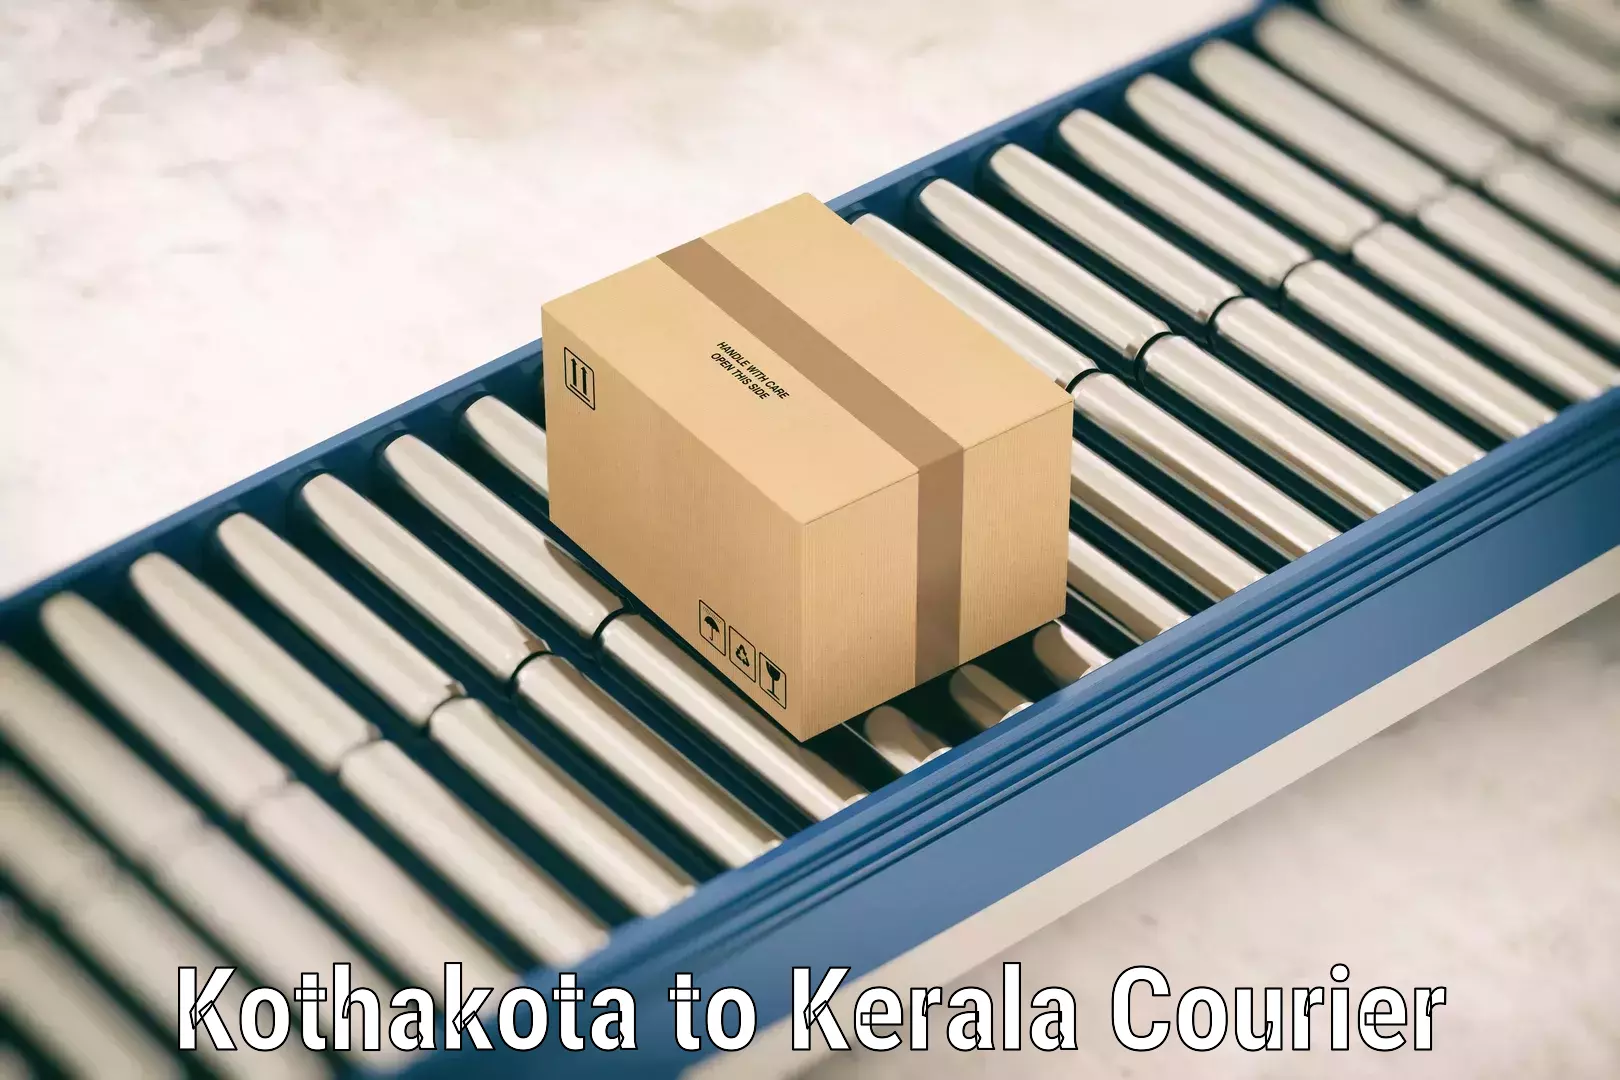 Baggage delivery estimate Kothakota to Chungatra